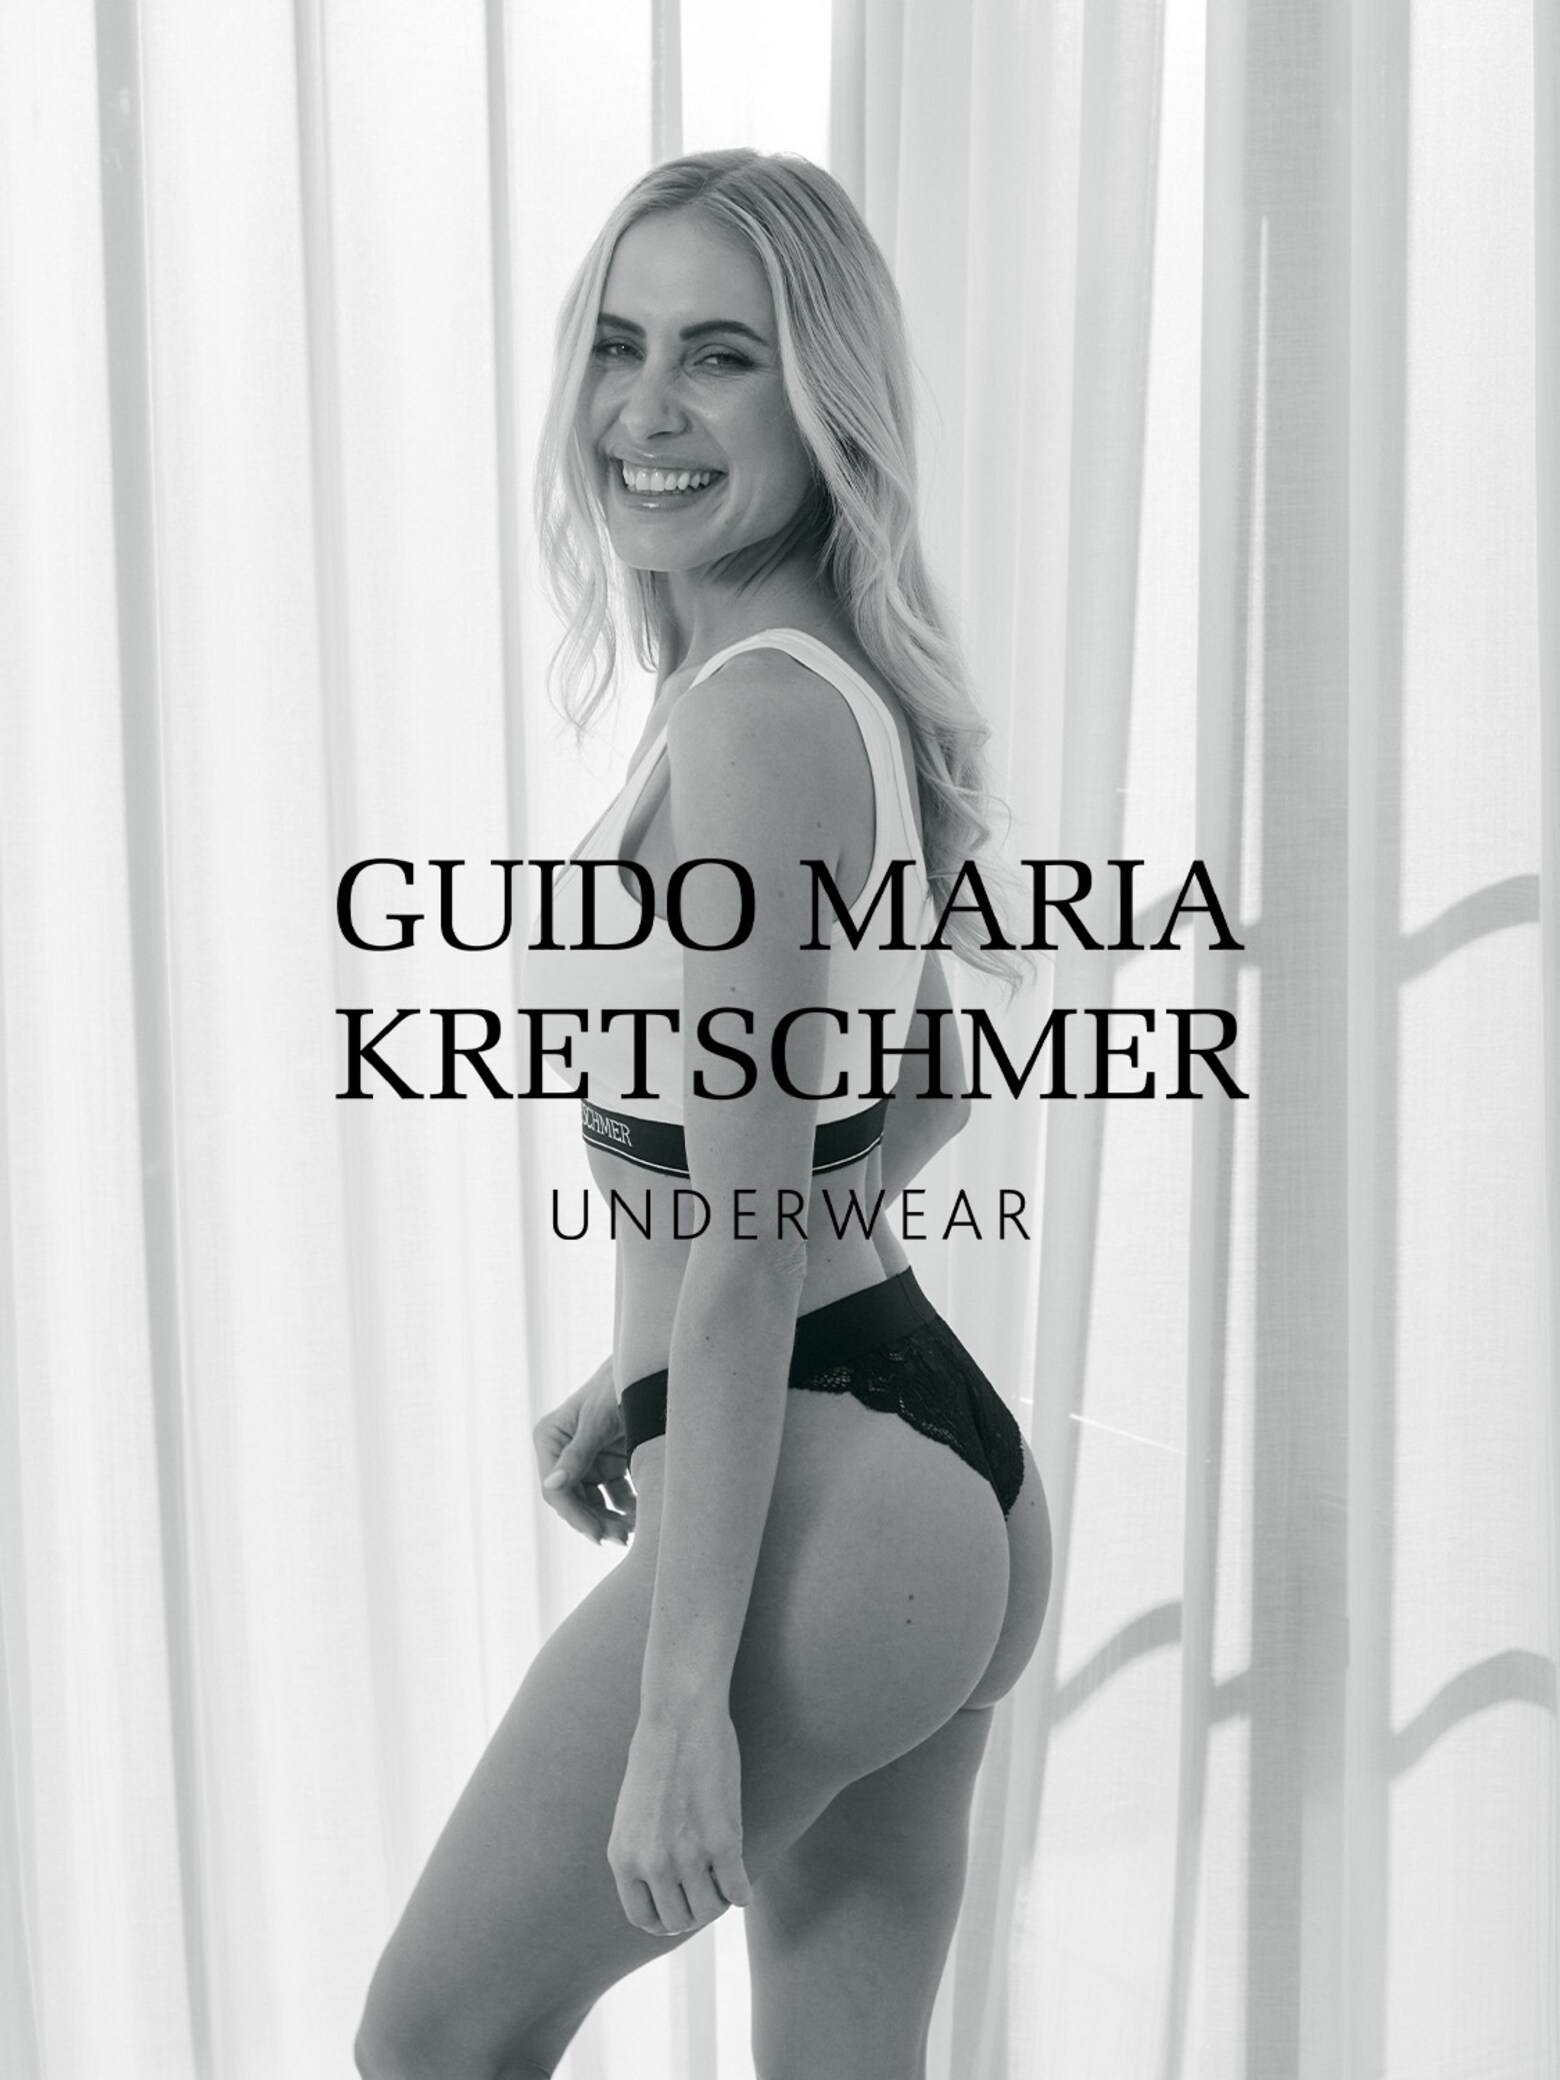 La collection de sous-vêtements Guido Maria Kretschmer Women